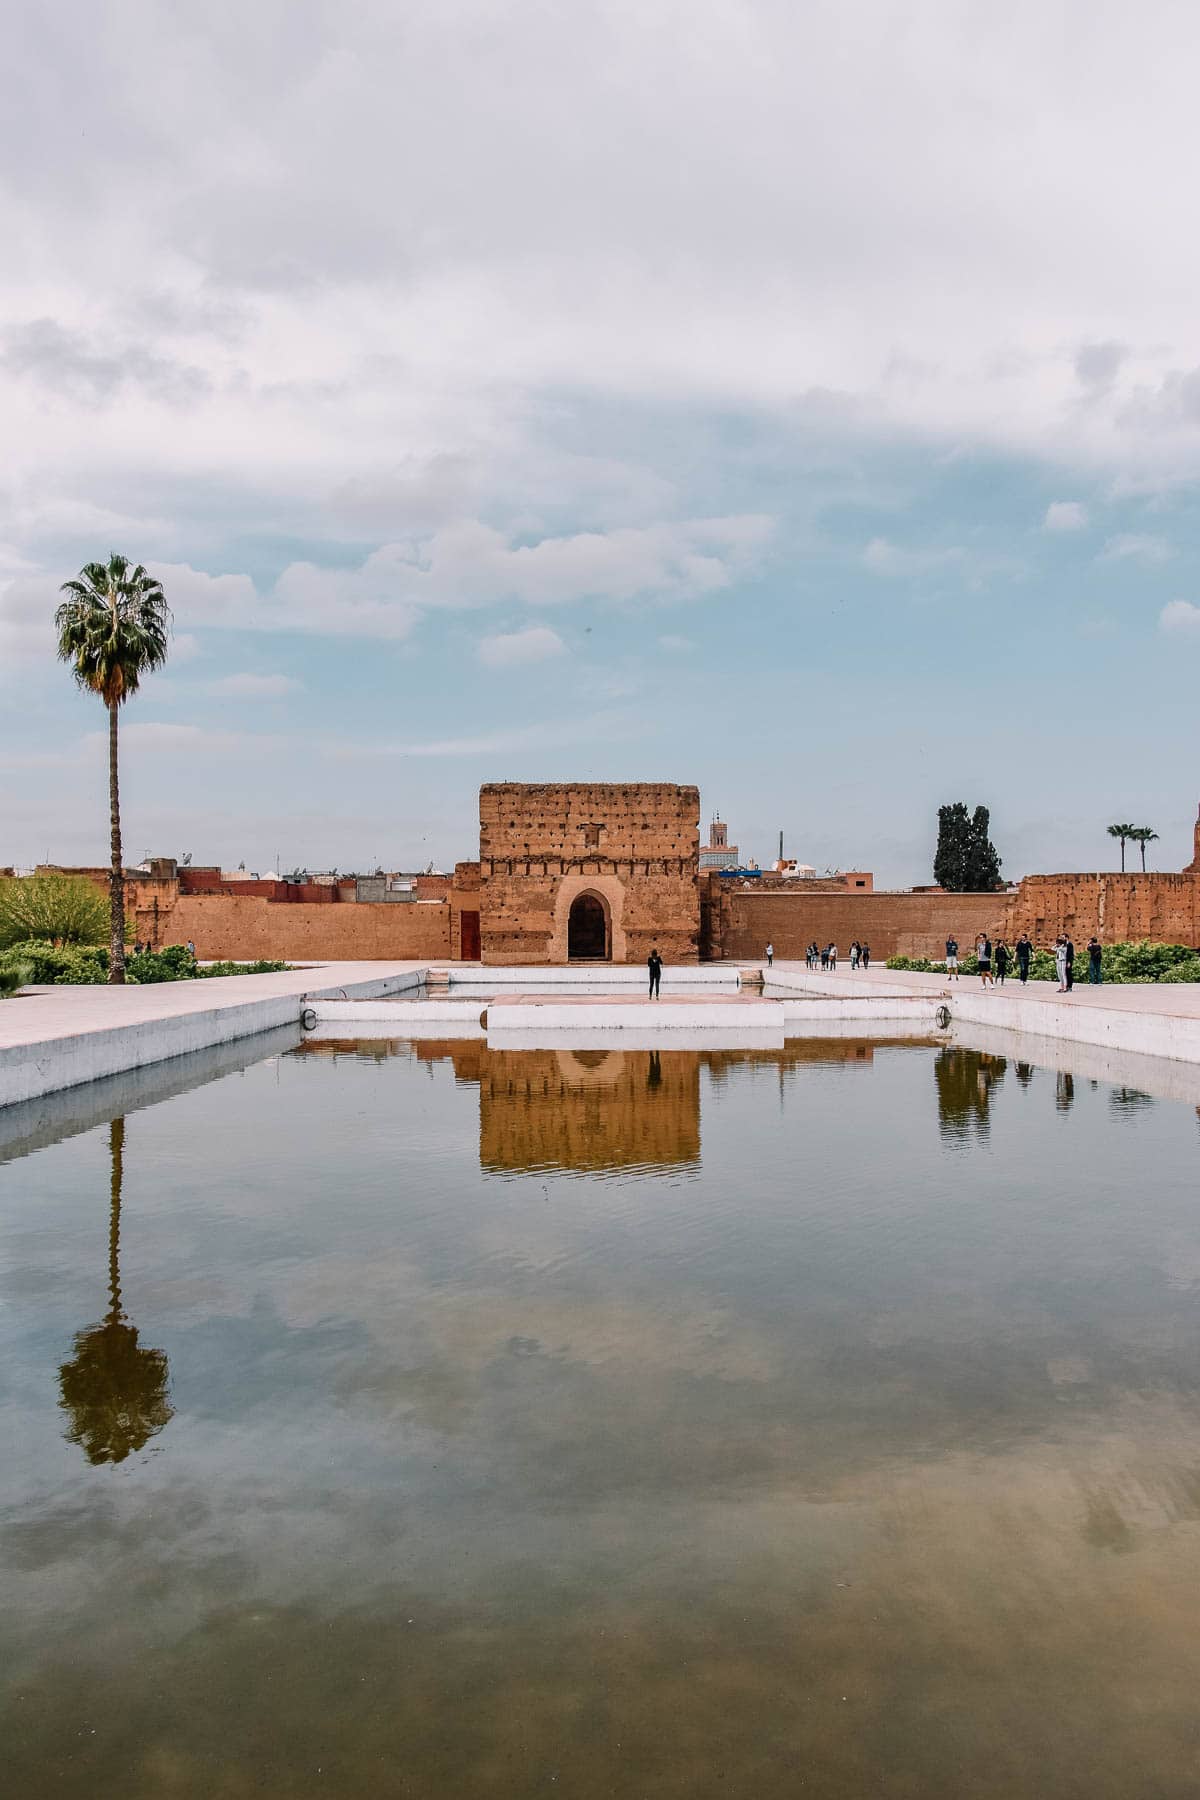 Urlaub in Marokko: Die 10 schönsten Fotospots in Marrakesch